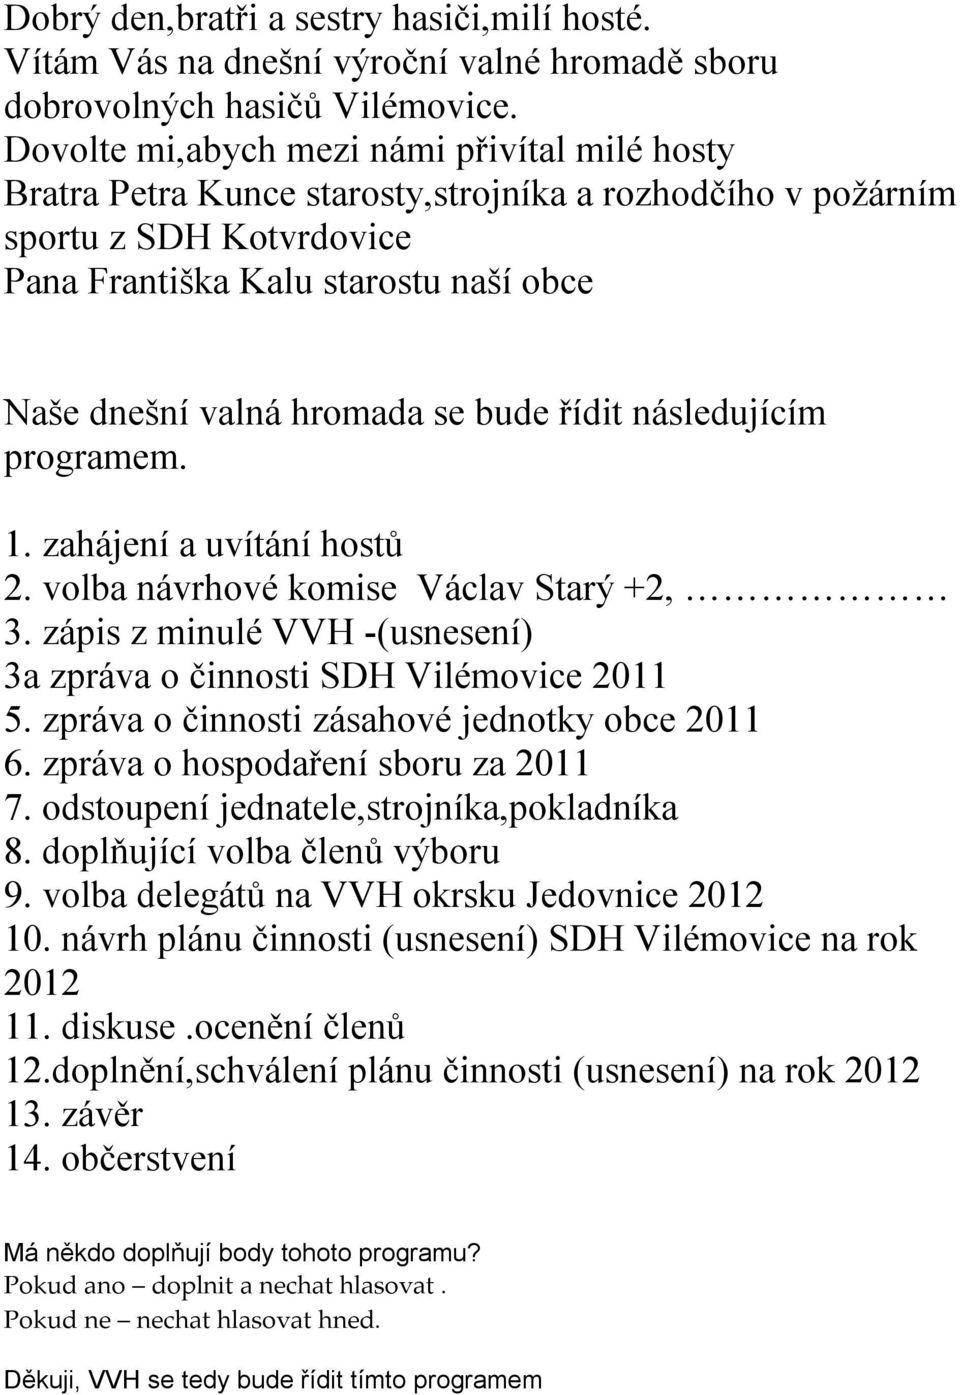 se bude řídit následujícím programem. 1. zahájení a uvítání hostů 2. volba návrhové komise Václav Starý +2, 3. zápis z minulé VVH -(usnesení) 3a zpráva o činnosti SDH Vilémovice 2011 5.